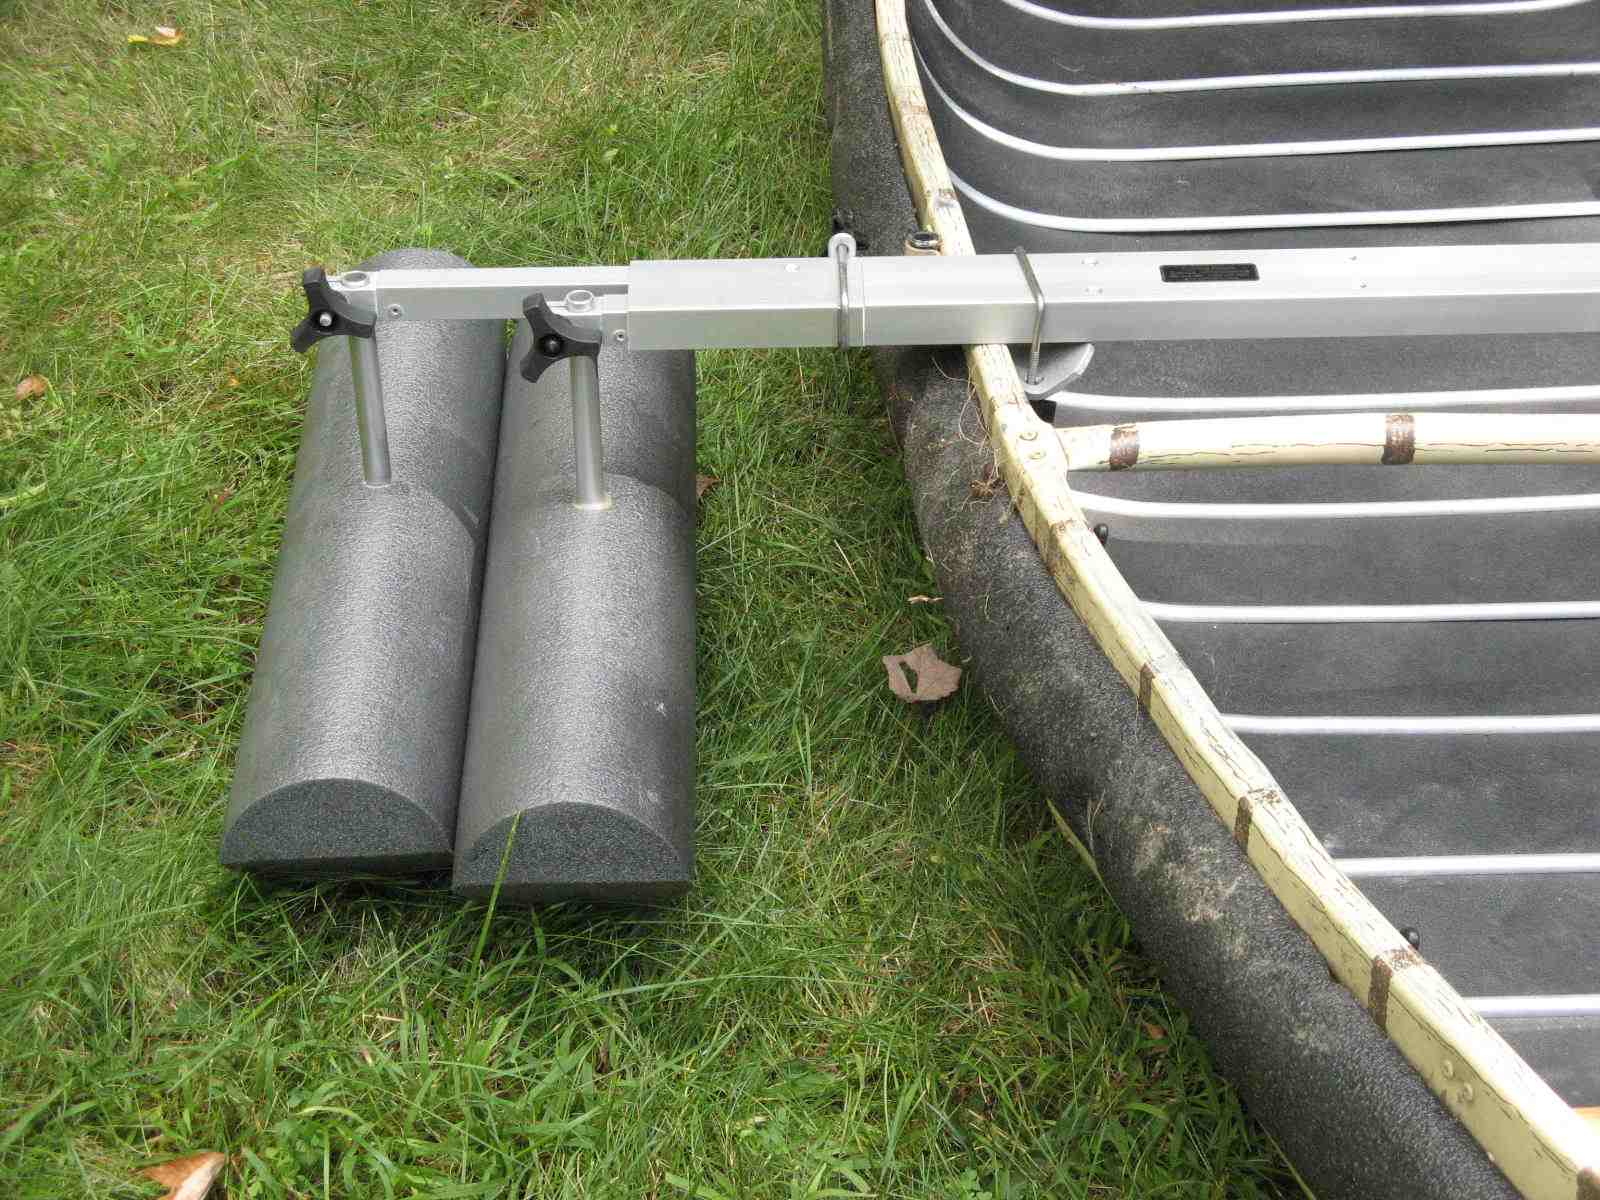 Canoe Stabilizer Floats - informed is forearmed